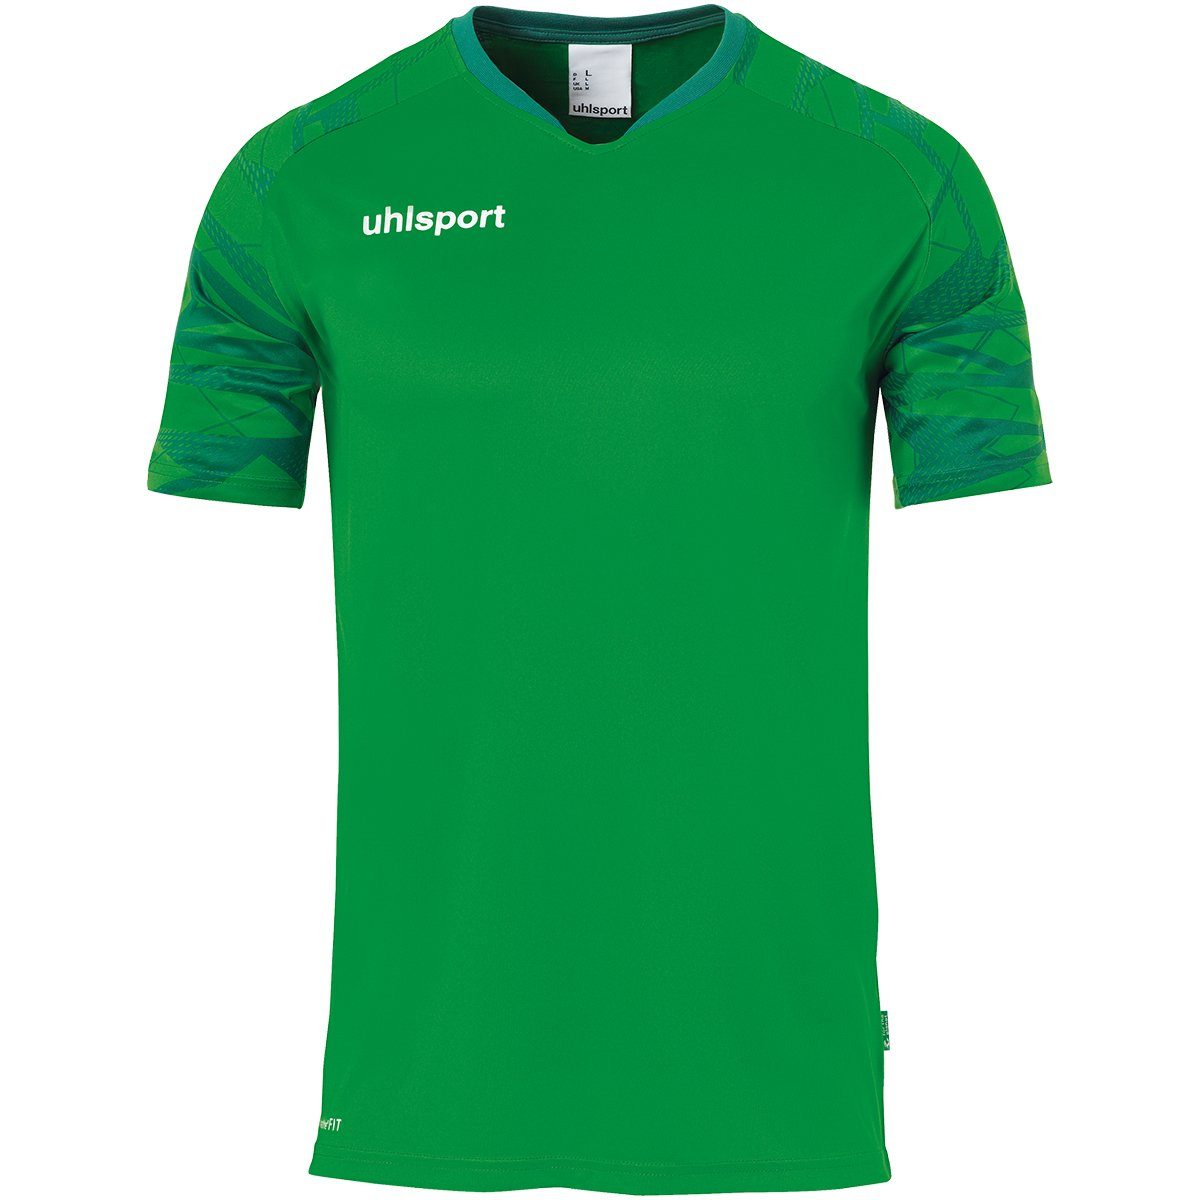 GOAL Trainings-T-Shirt atmungsaktiv TRIKOT uhlsport Trainingsshirt grün/lagune KURZARM uhlsport 25